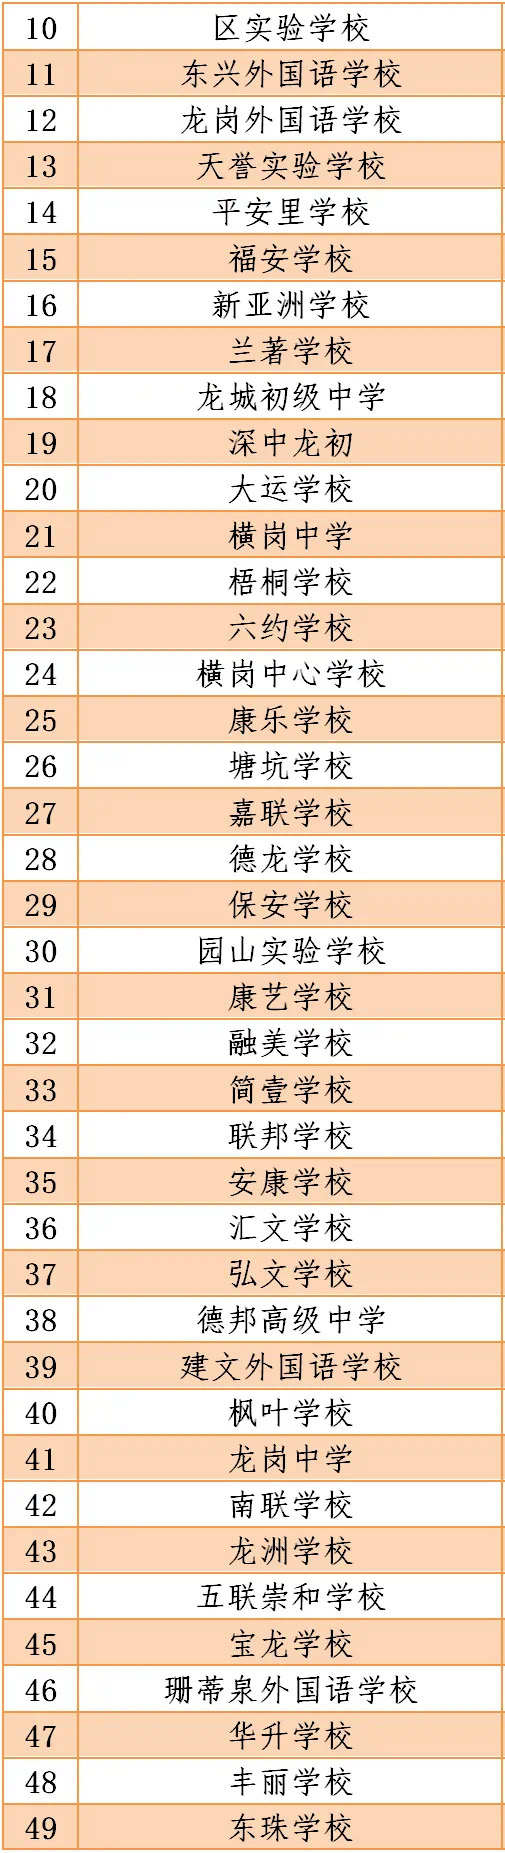 深圳2020年疫情期间符合开学条件的学校名单